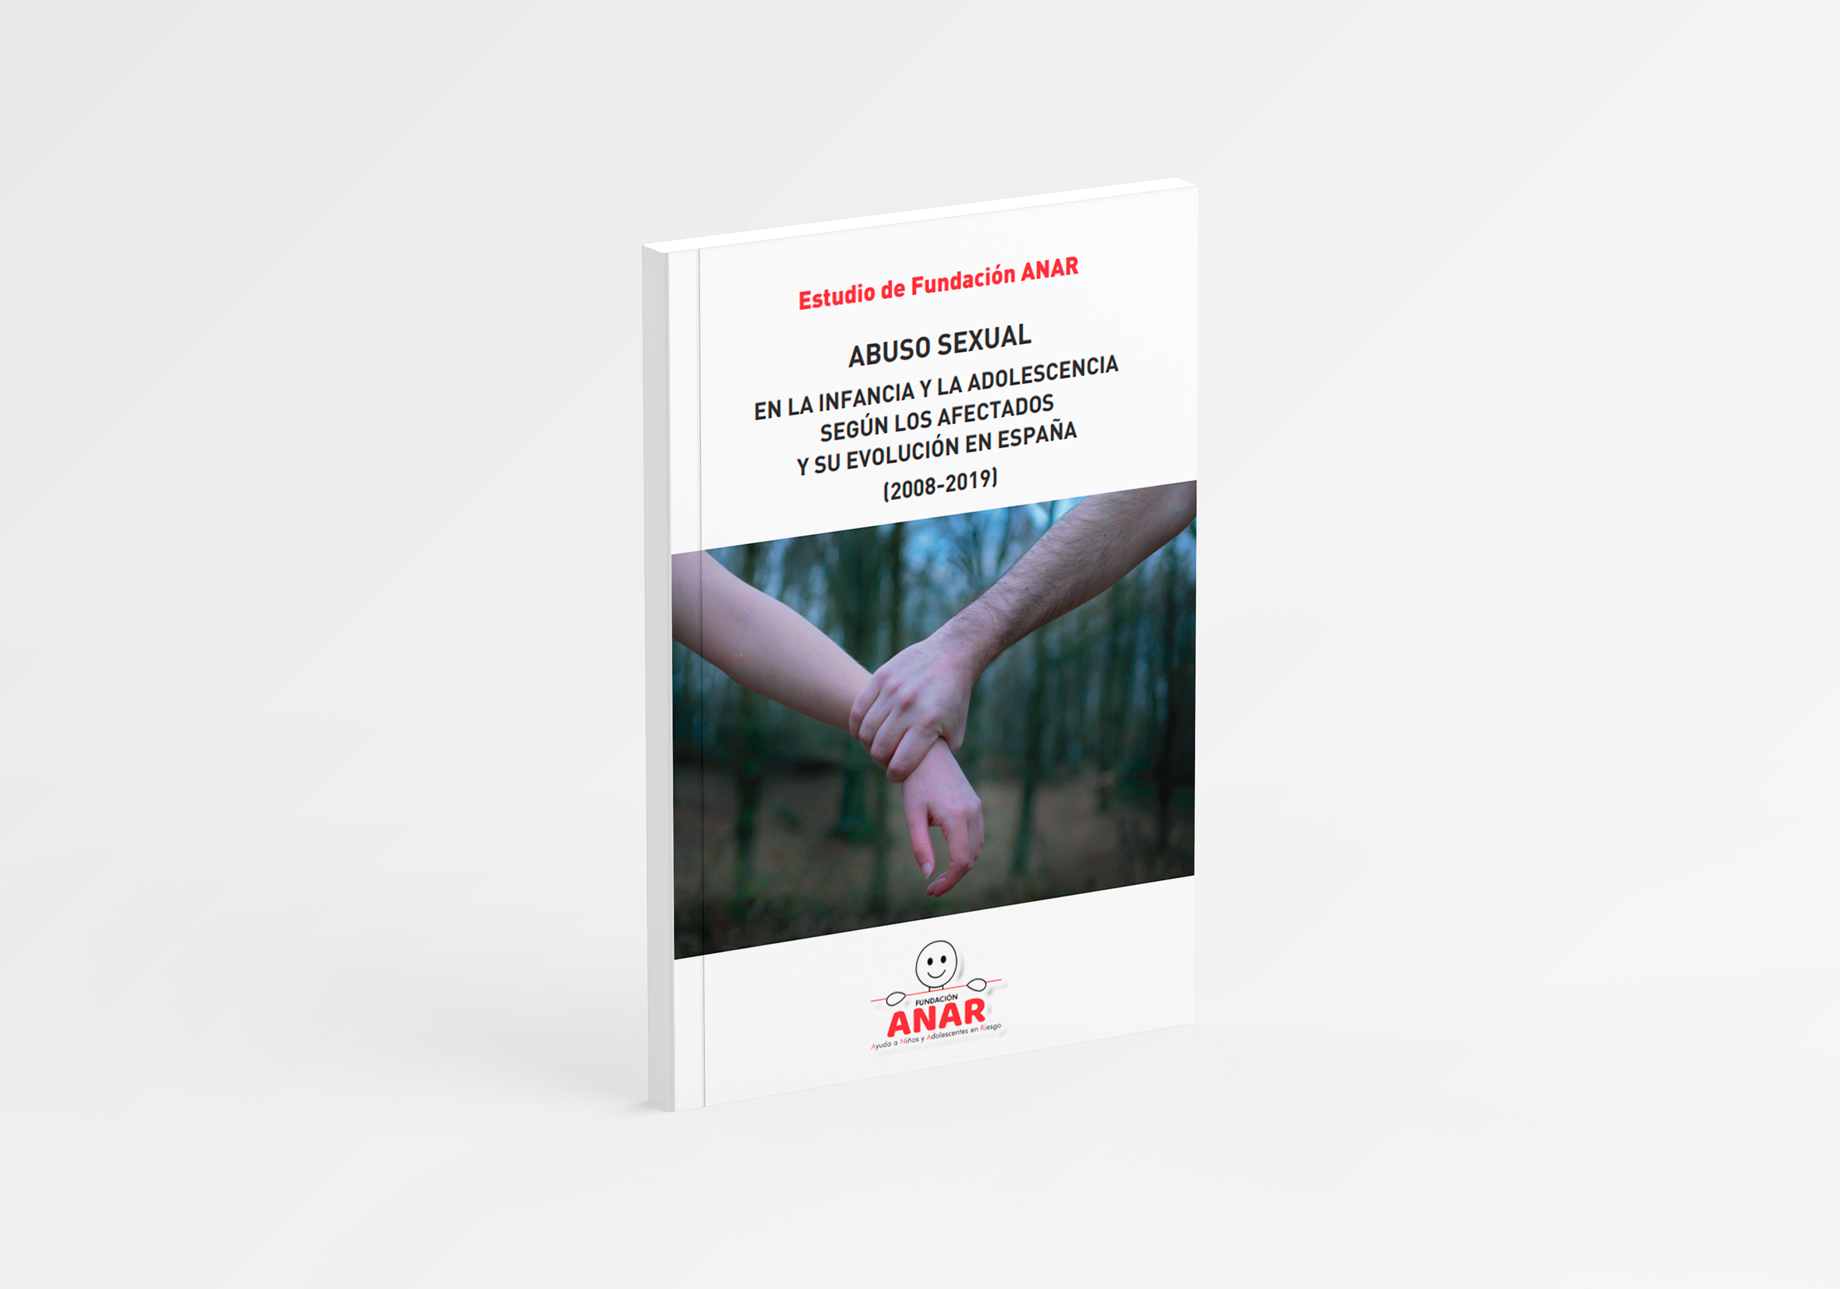 Abuso Sexual en la Infancia y la Adolescencia según los Afectados y su Evolución en España(2008-2019)